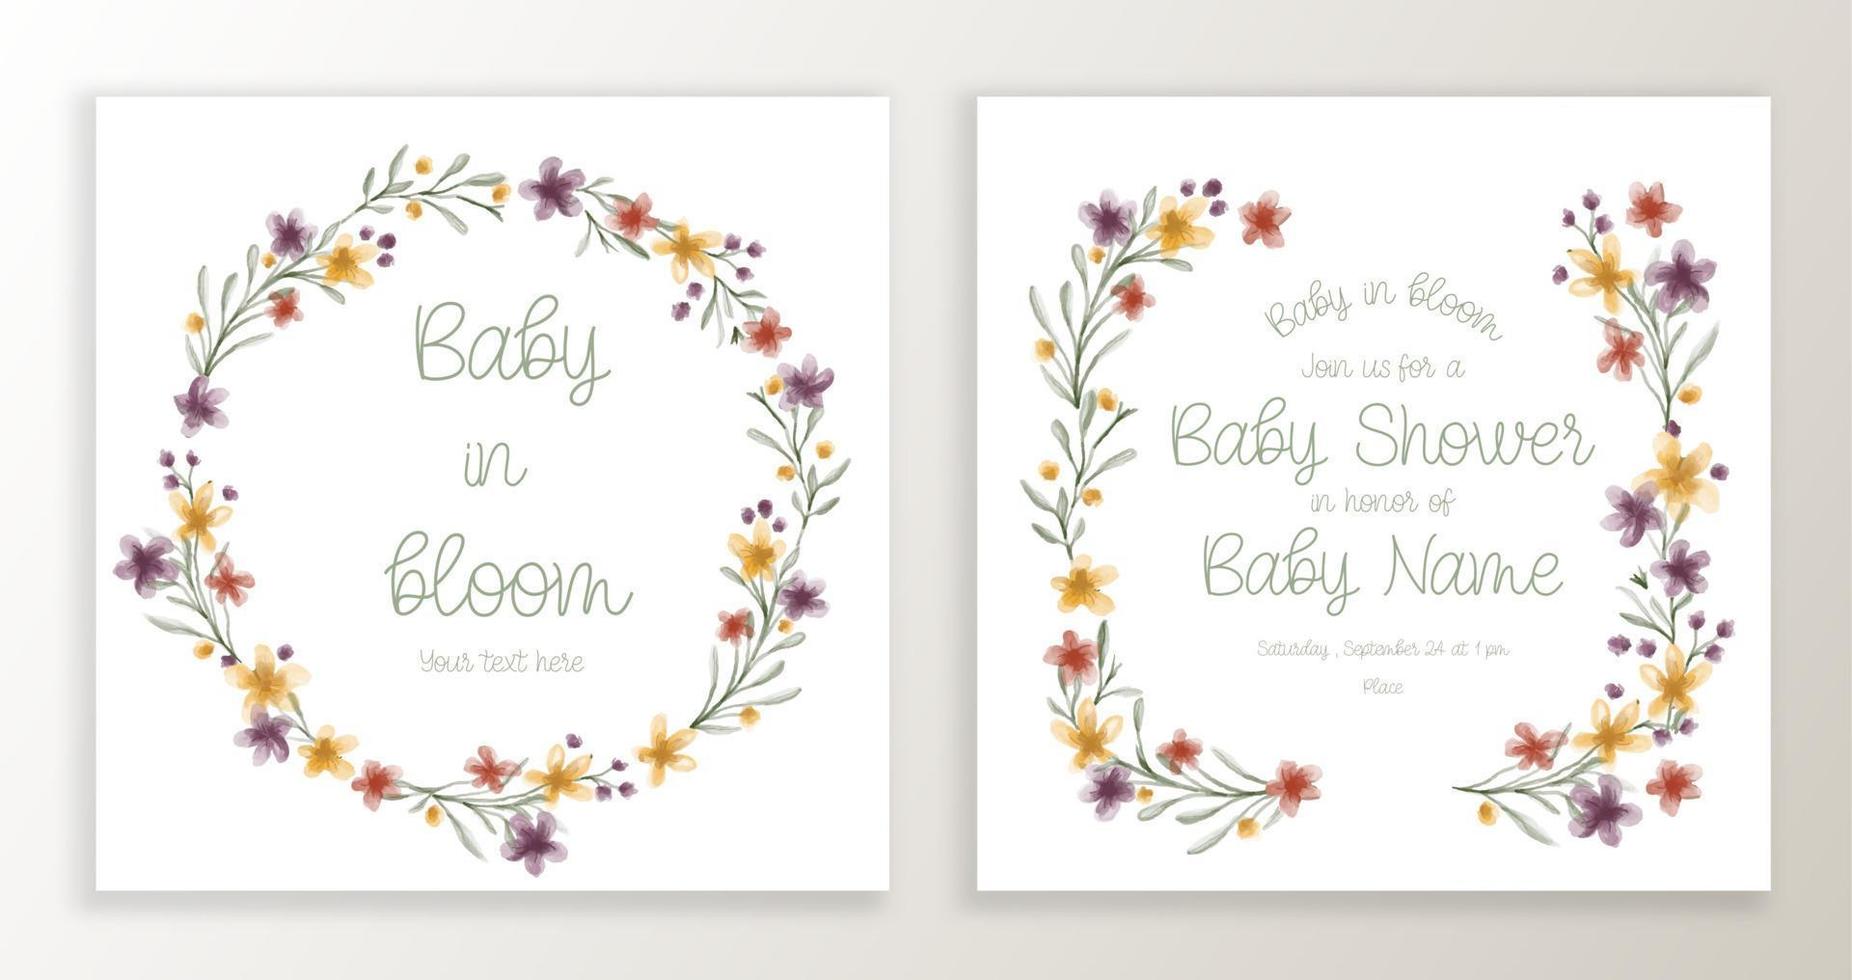 plantilla de invitación de baby shower con elementos de diseño floral y tipográfico de acuarela. vector